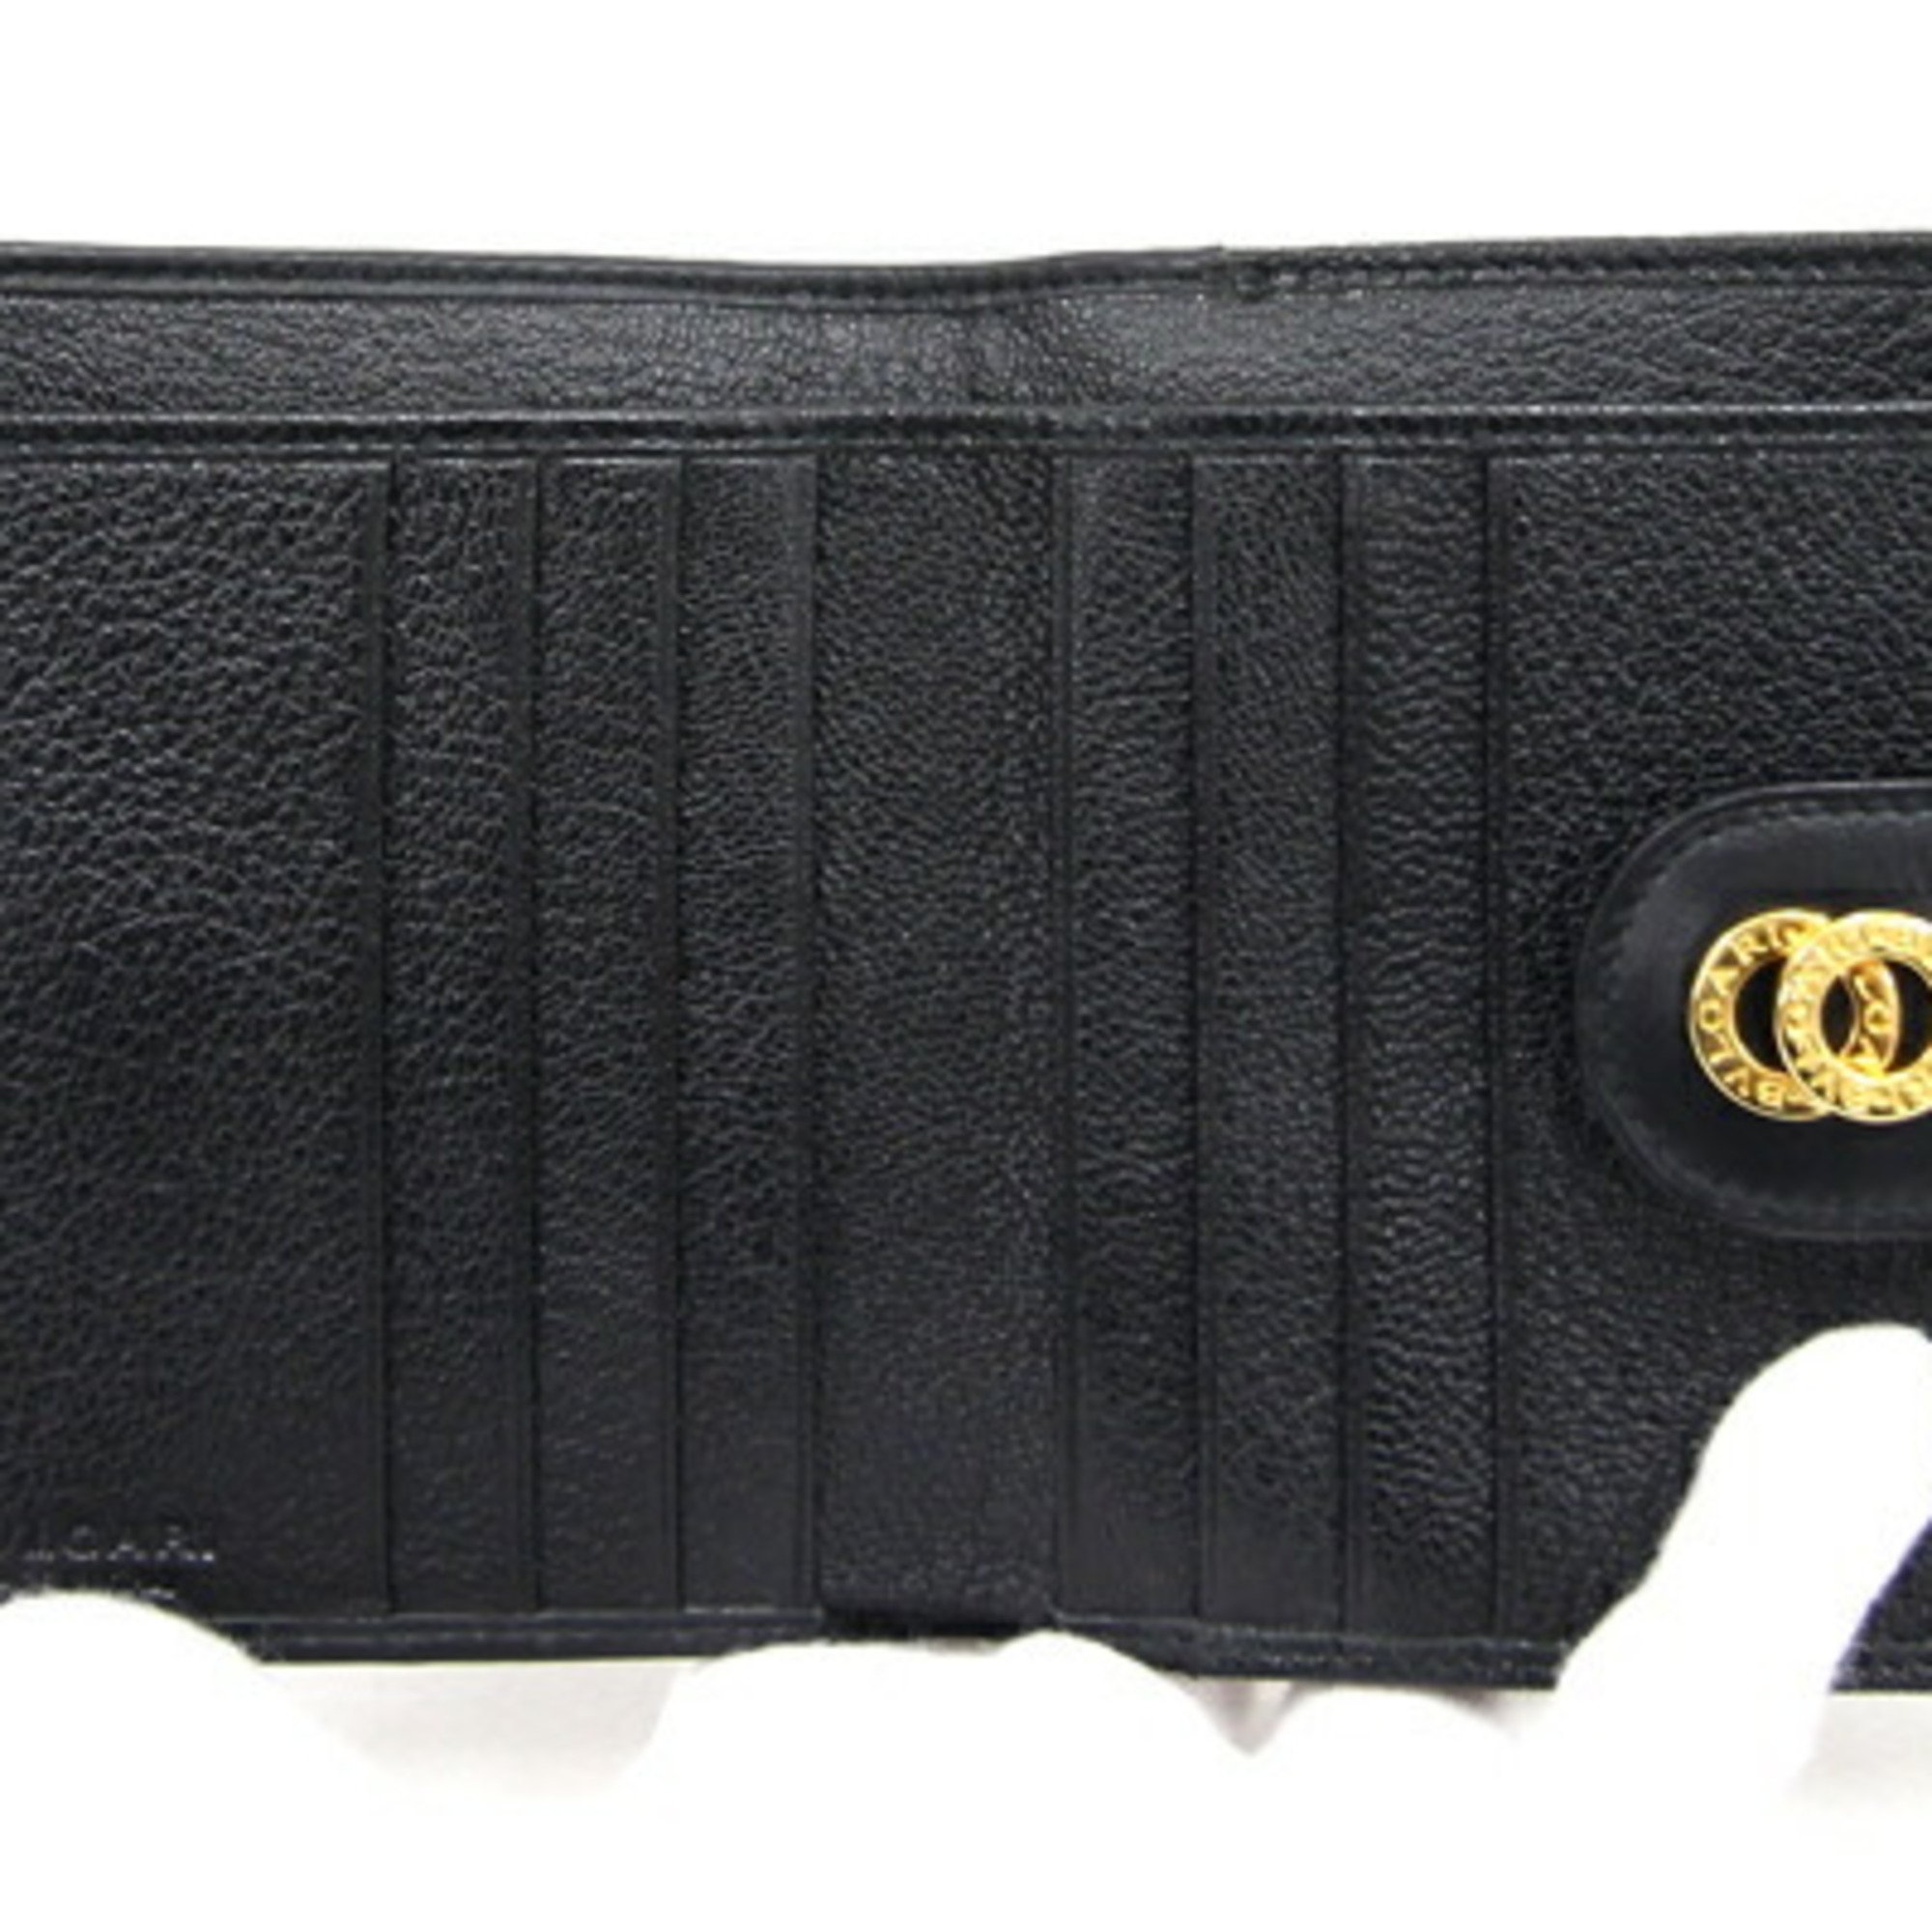 BVLGARI W Wallet Doppio Tondo 26203 Black Leather Compact Folding Women's